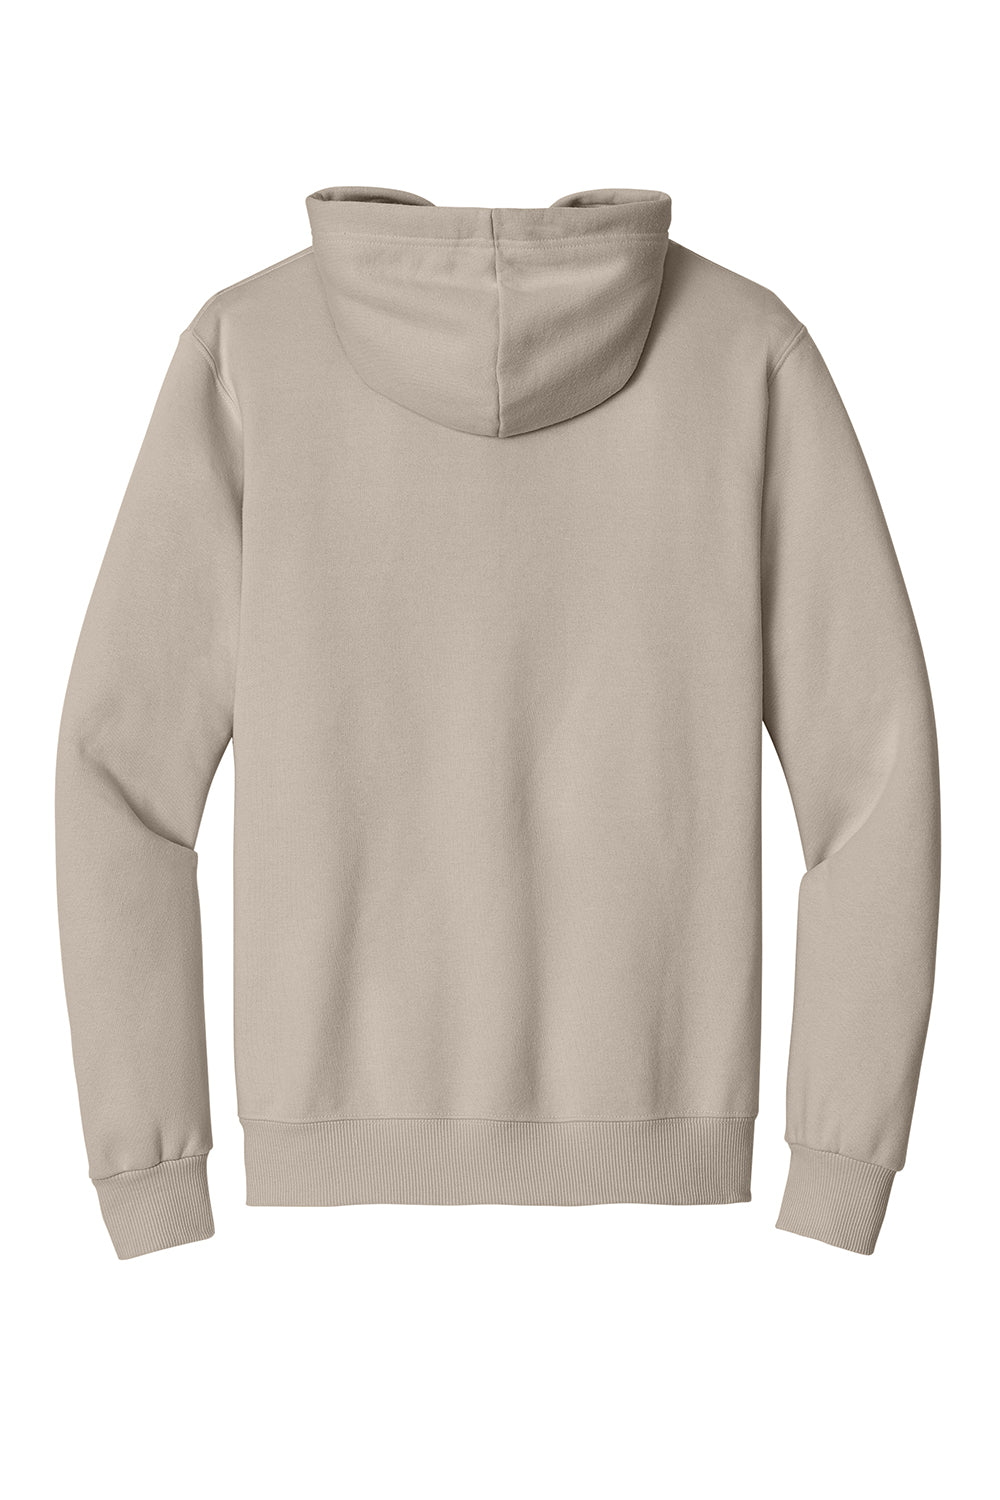 Jerzees 700M Mens Eco Premium Hooded Sweatshirt Hoodie Putty Flat Back